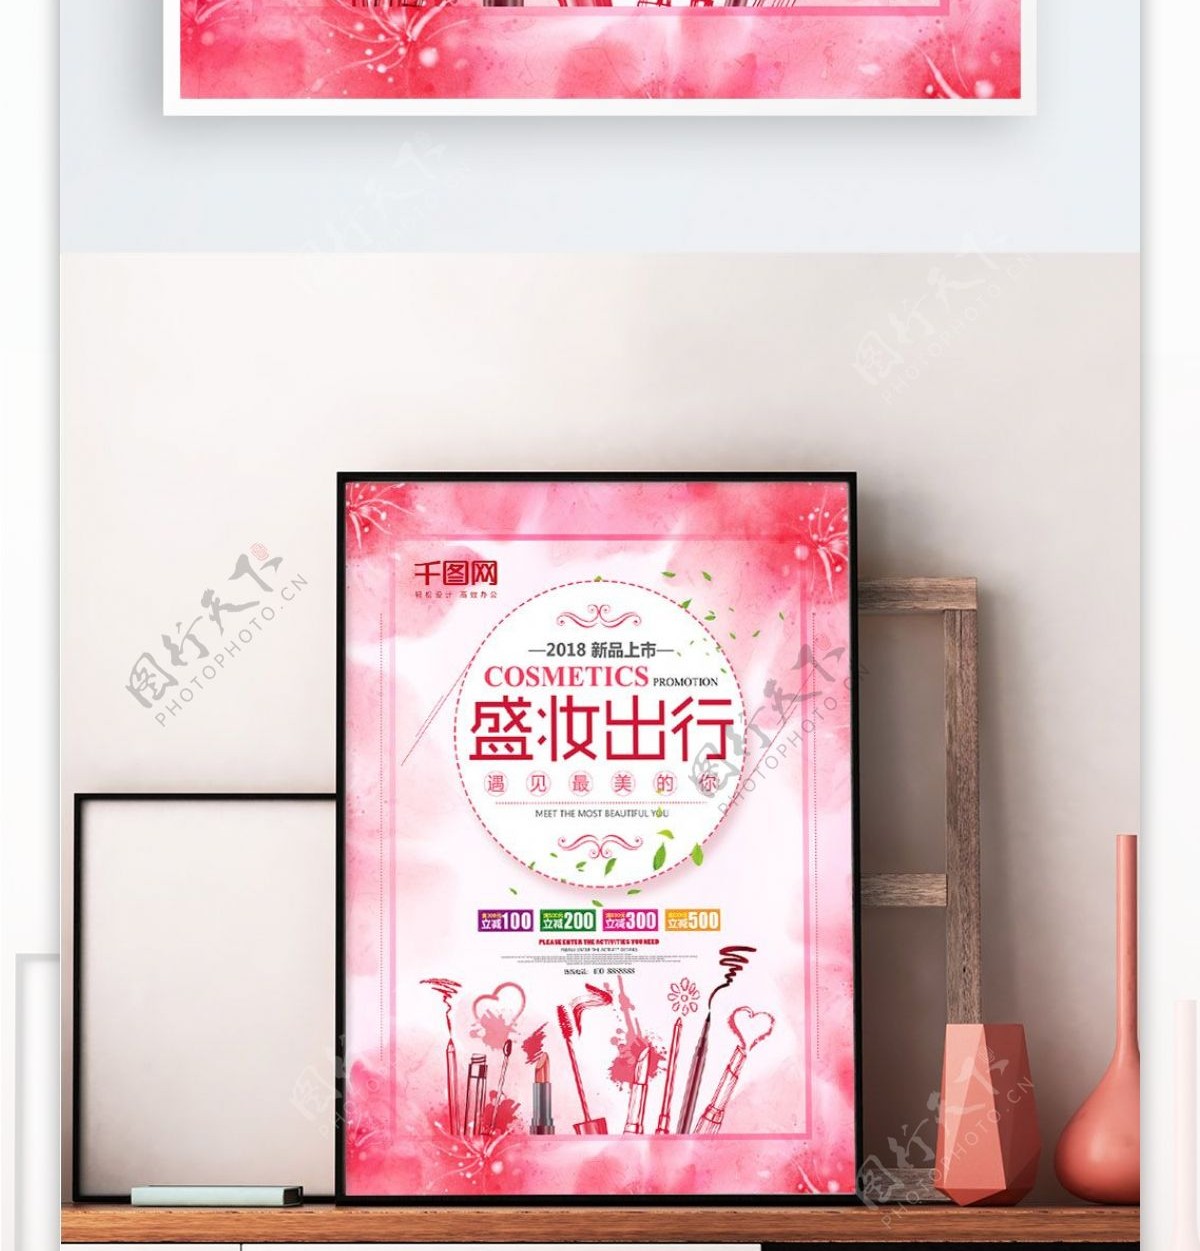 粉色彩妆宣传促销商店化妆品打折促销海报